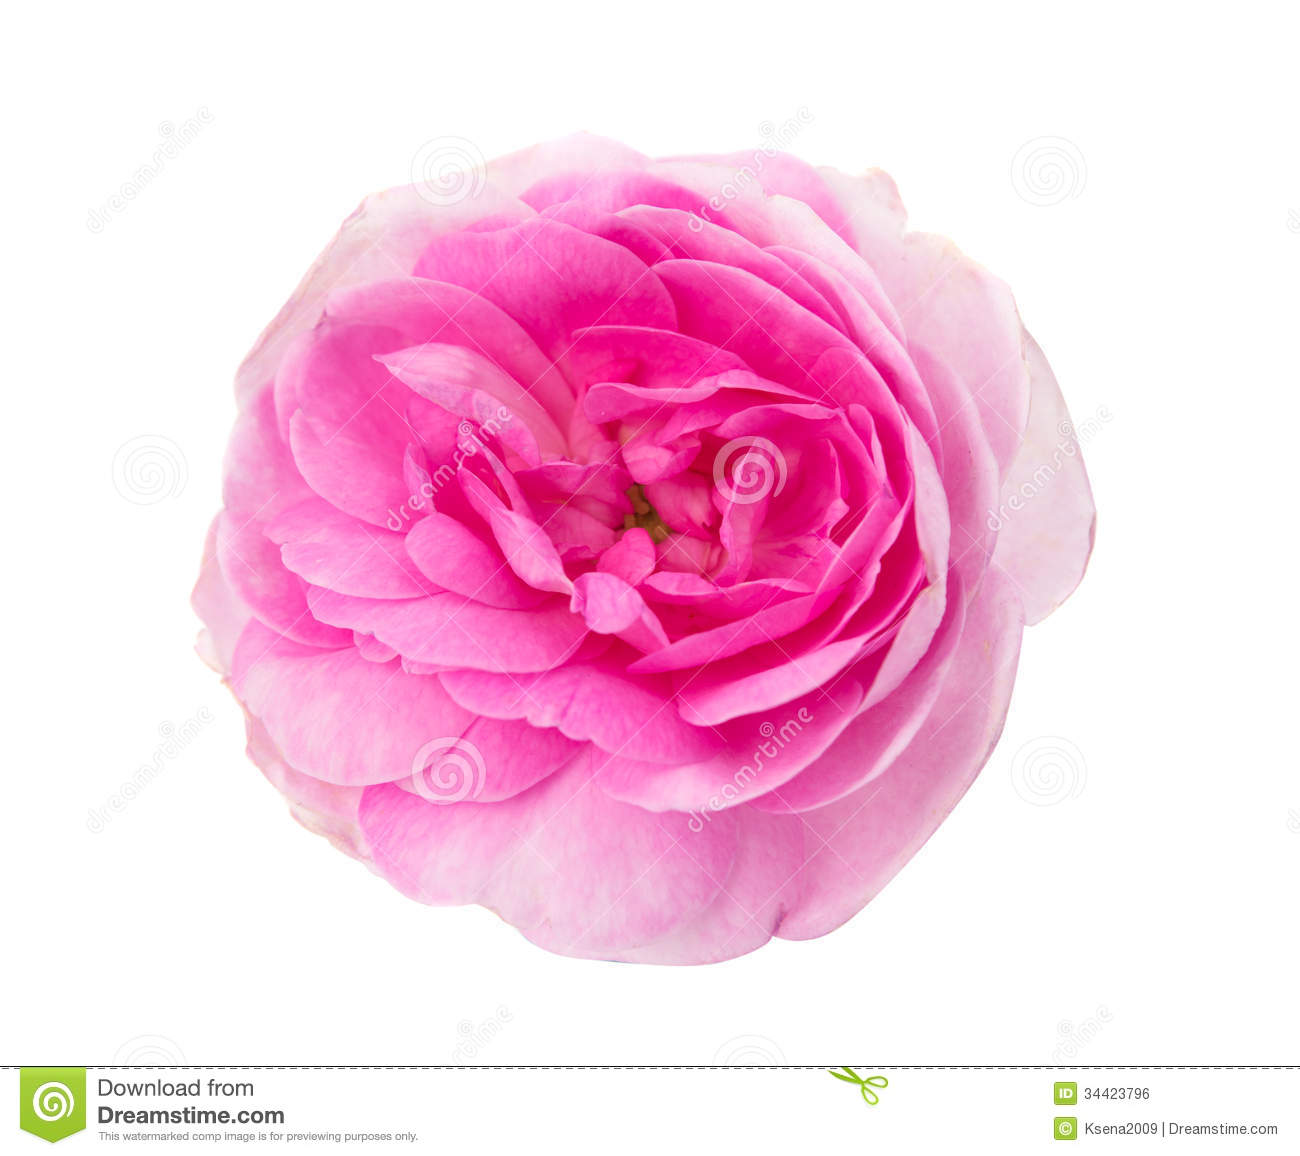 Pink Tea Rose Royalty Free Stock Image   Image  34423796